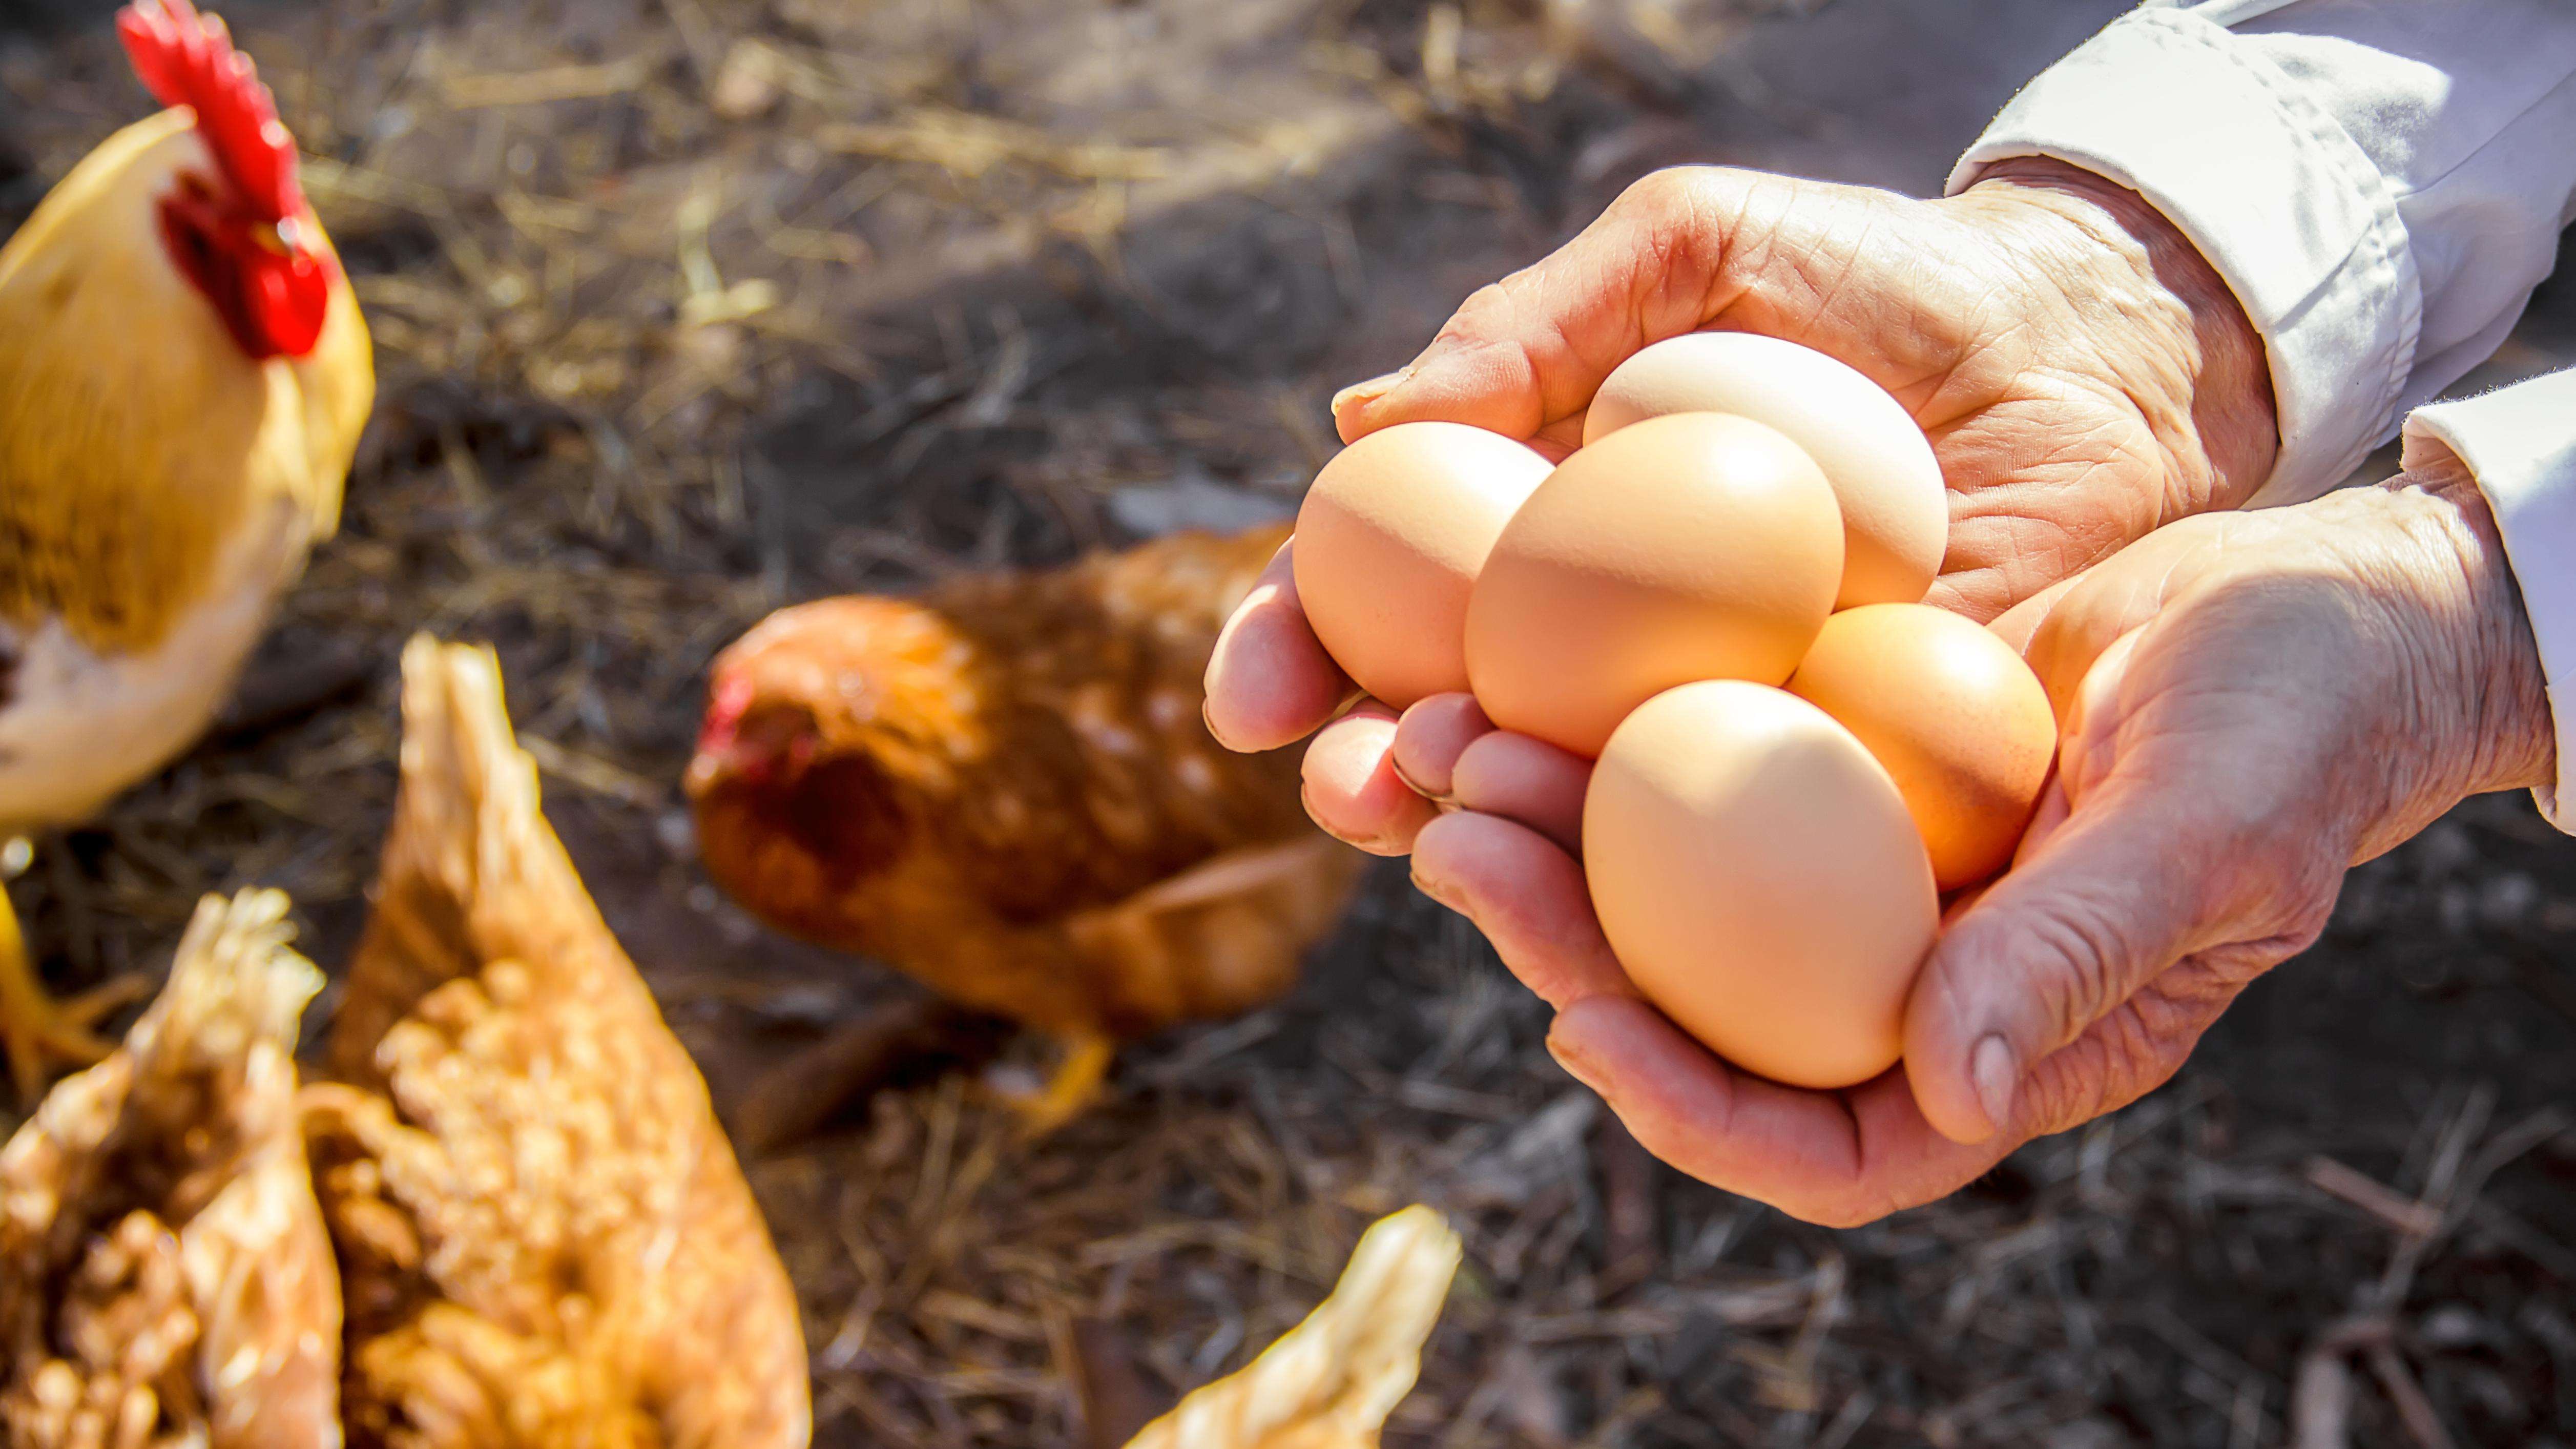 Chicken eggs in hands